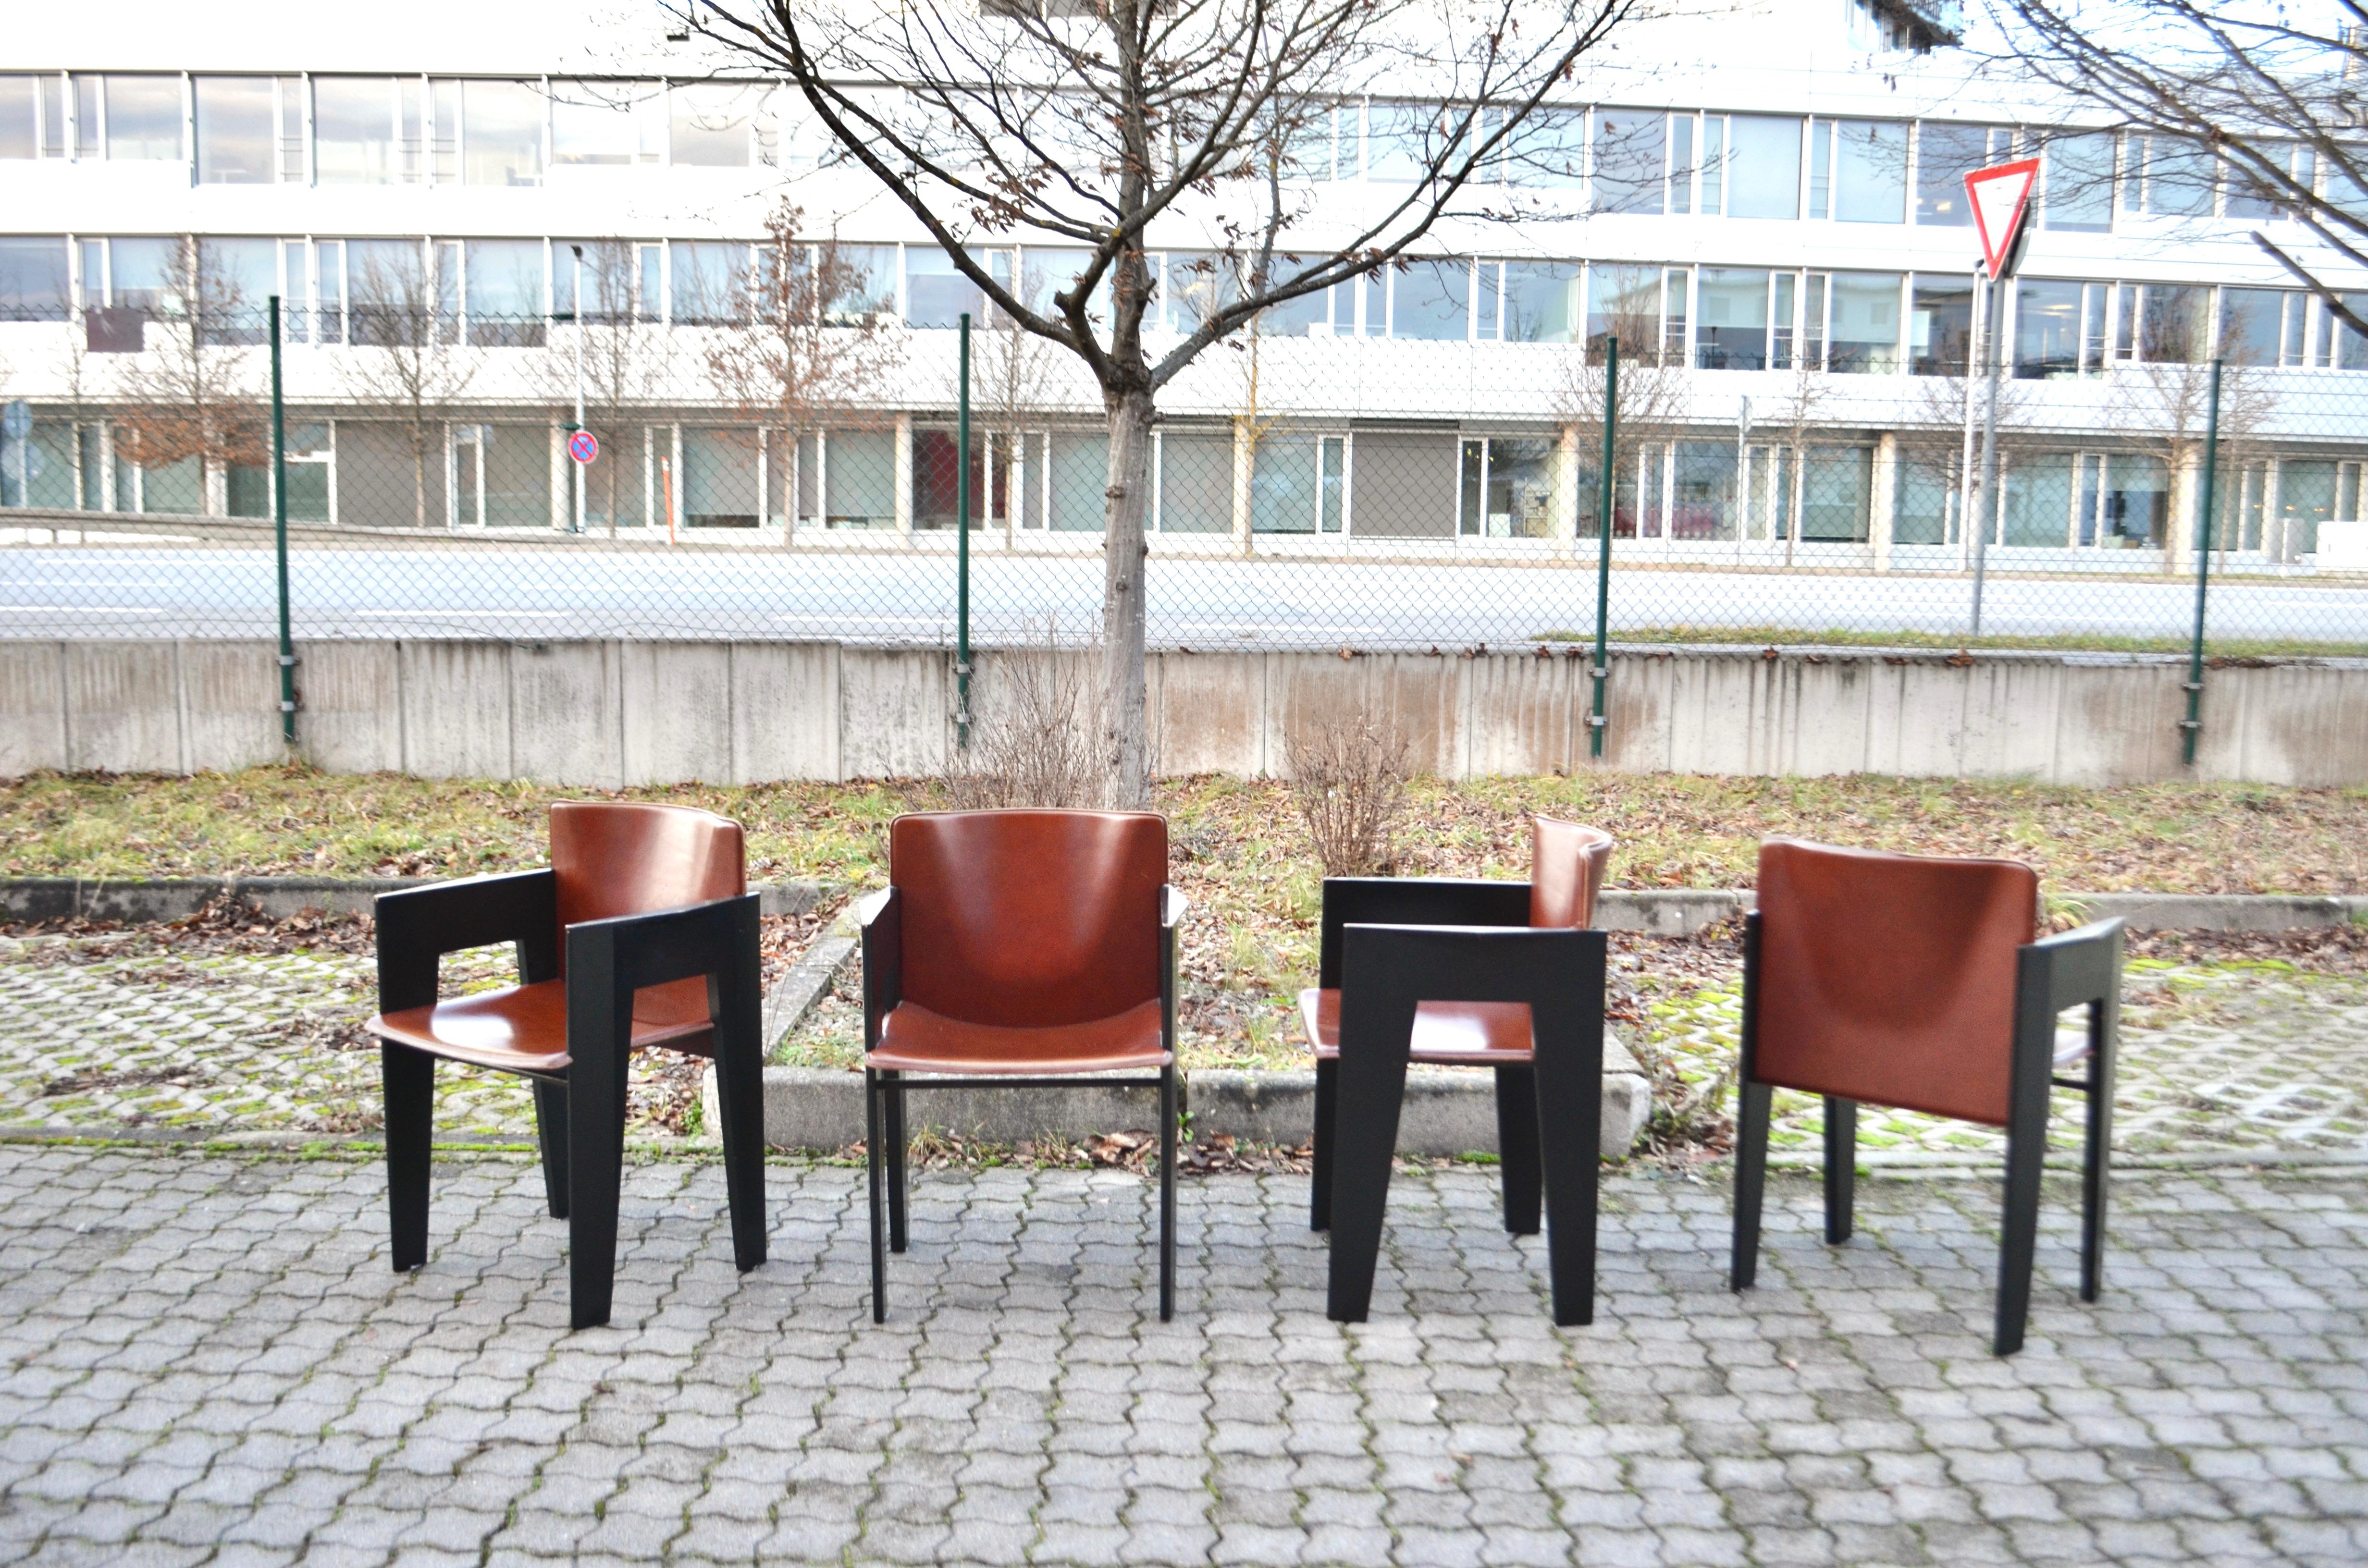 Arnold Merckx hat für den niederländischen Hersteller ARCO diesen äußerst komfortablen Esszimmer-Sessel entworfen.
Die Rückenlehne ist schön geschwungen und auch die Sitzfläche ist schmal.
Das Gestell des Stuhls ist aus schwarz lackierter Eiche,